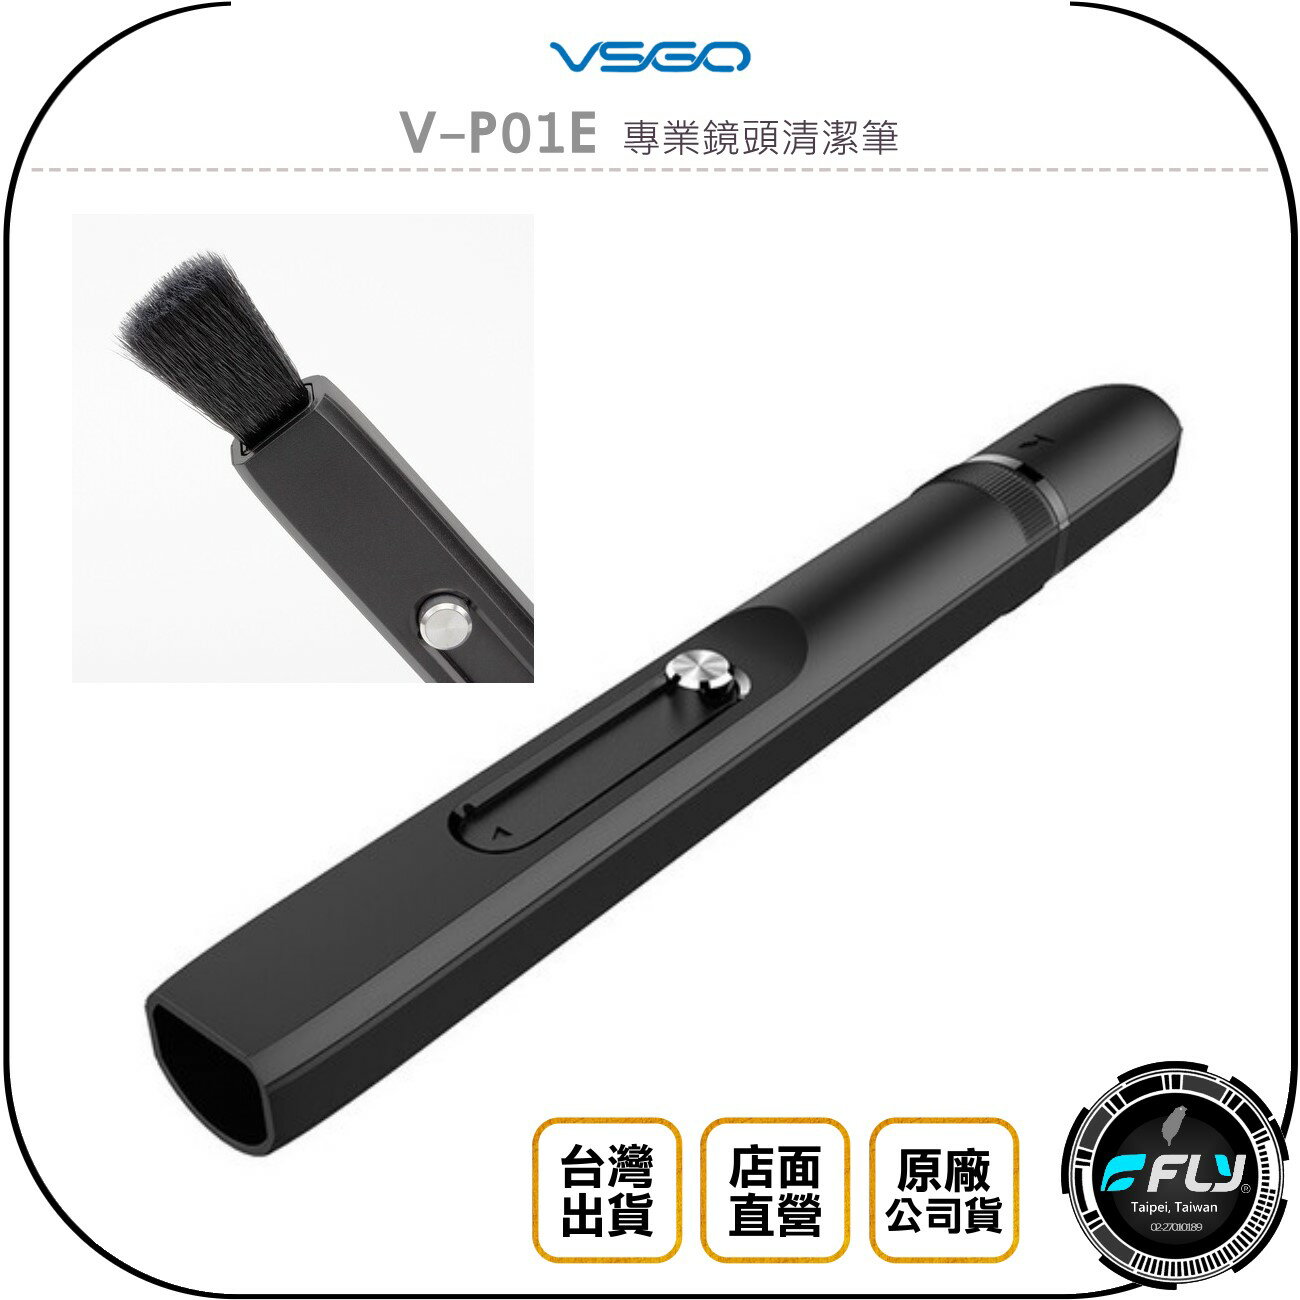 《飛翔無線3C》VSGO V-P01E 專業鏡頭清潔筆◉公司貨◉不傷鍍膜◉奈米級活性碳◉柔軟刷毛◉握持舒適